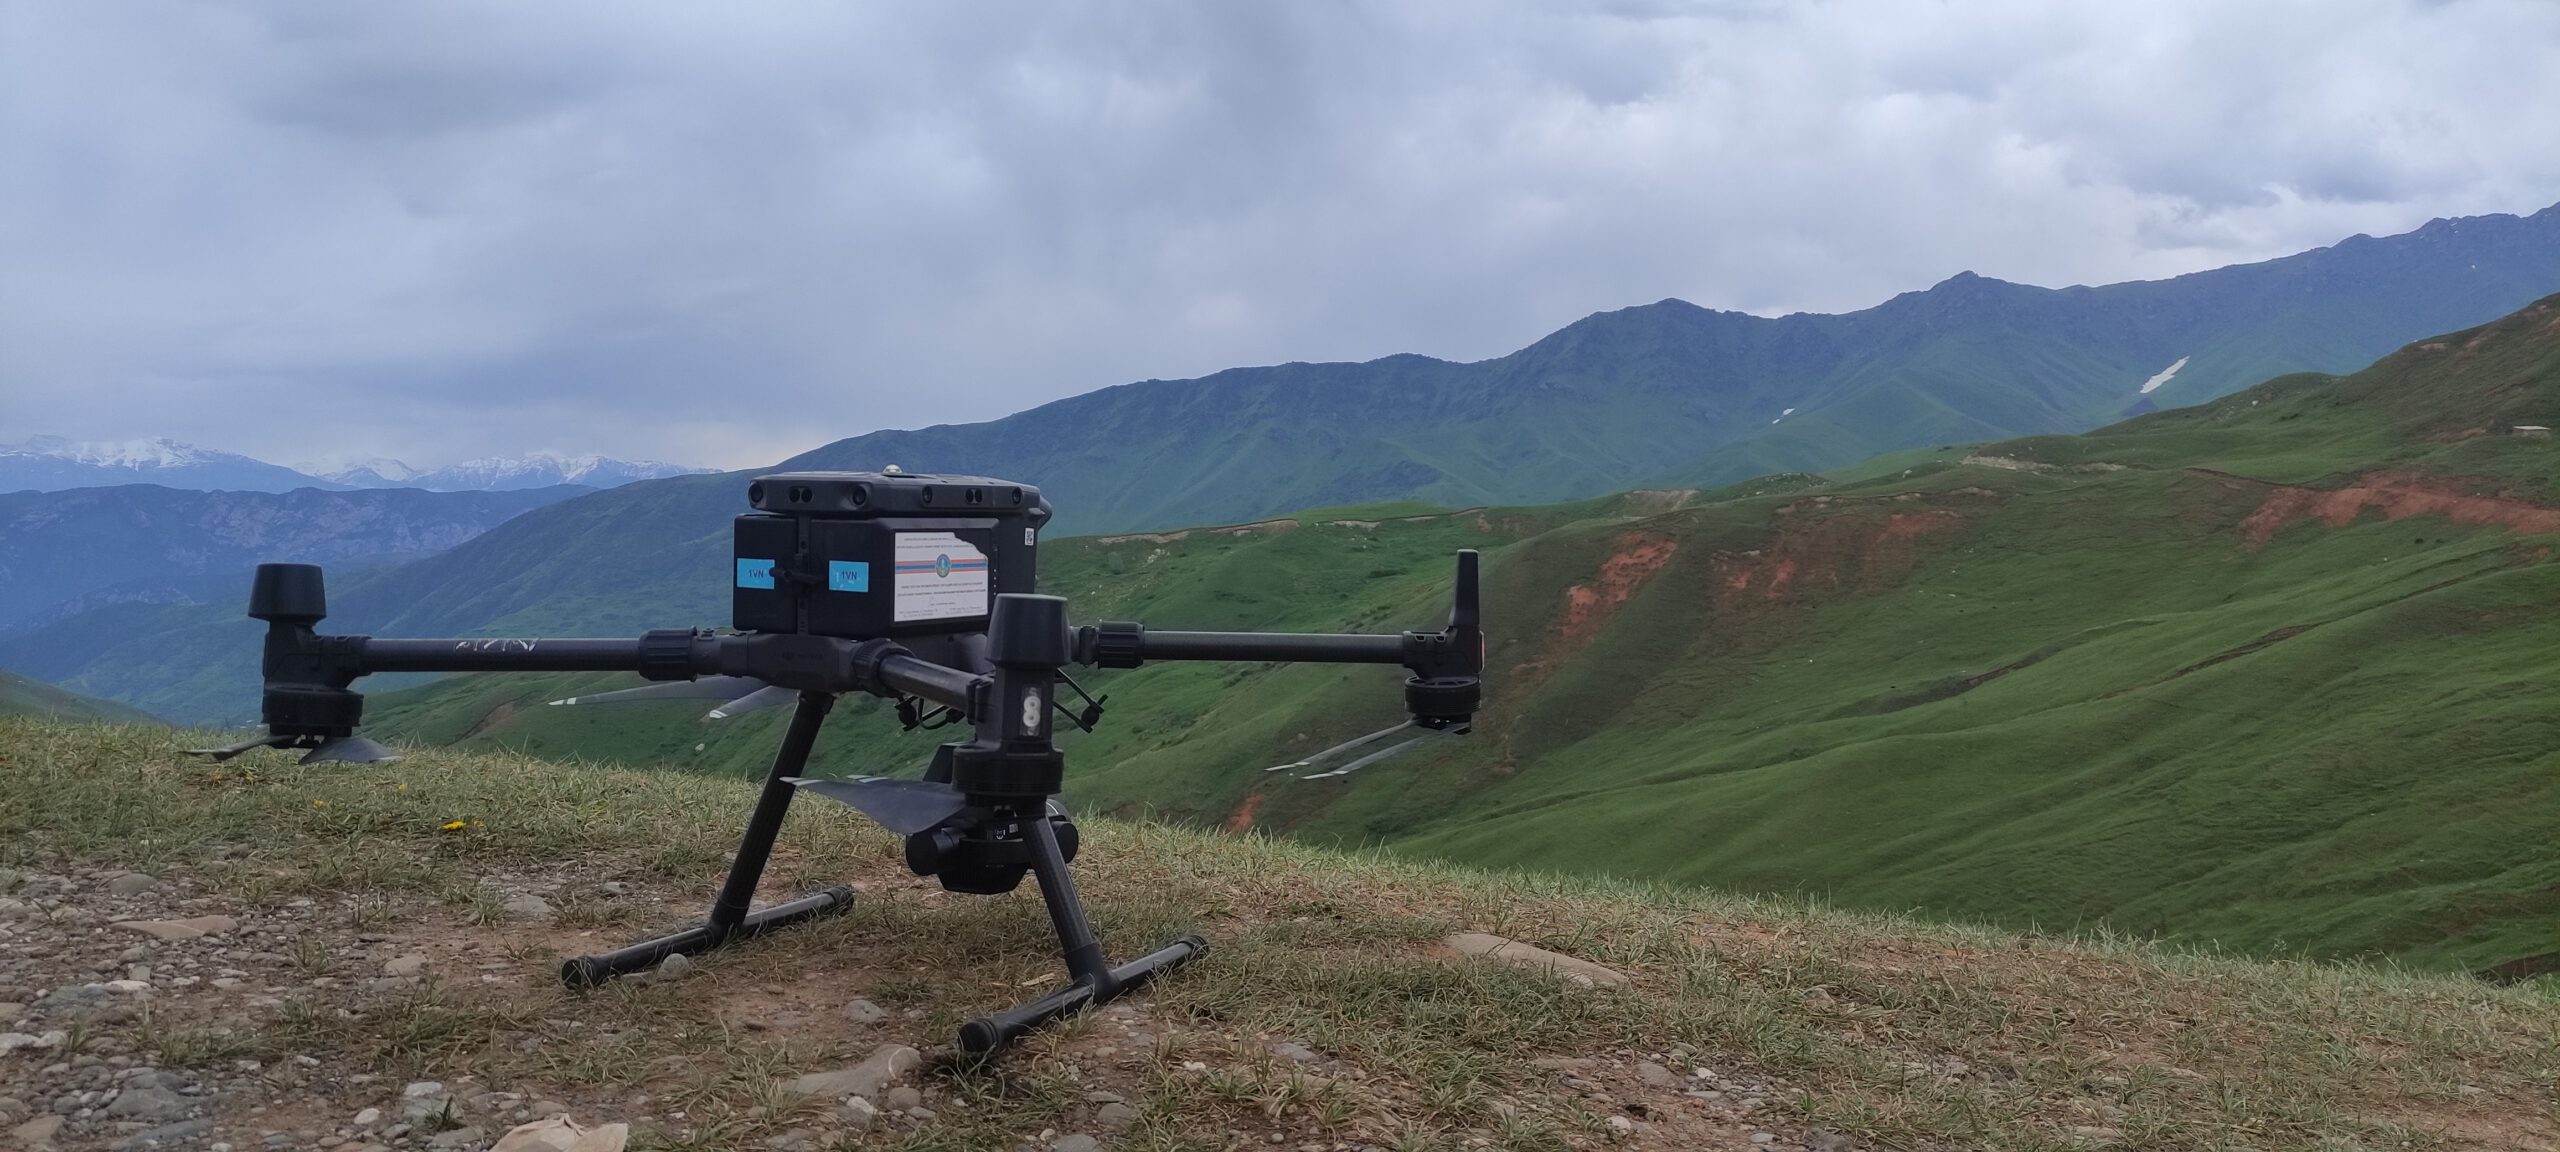 Dron preparado para volar en un proyecto de investigación. Seguro de Responsabilidad Civil, a terceros e integral para drones recreativos, profesionales y de investigación.